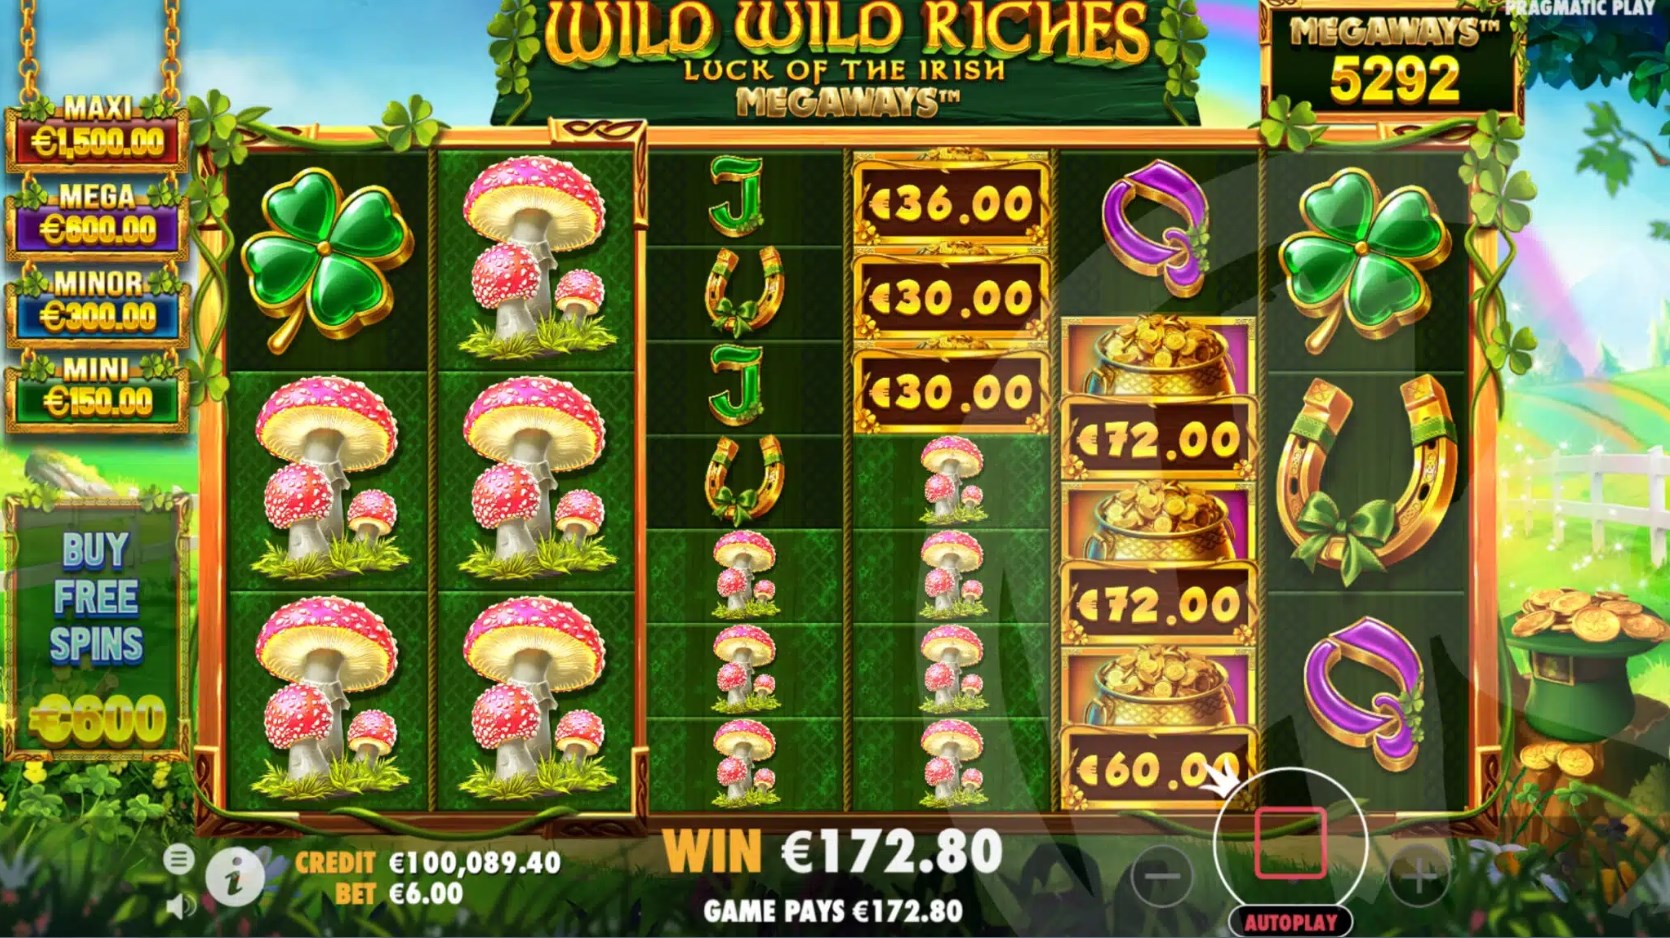 Wild Wild Riches slot game download latest version  1.0.0 screenshot 2